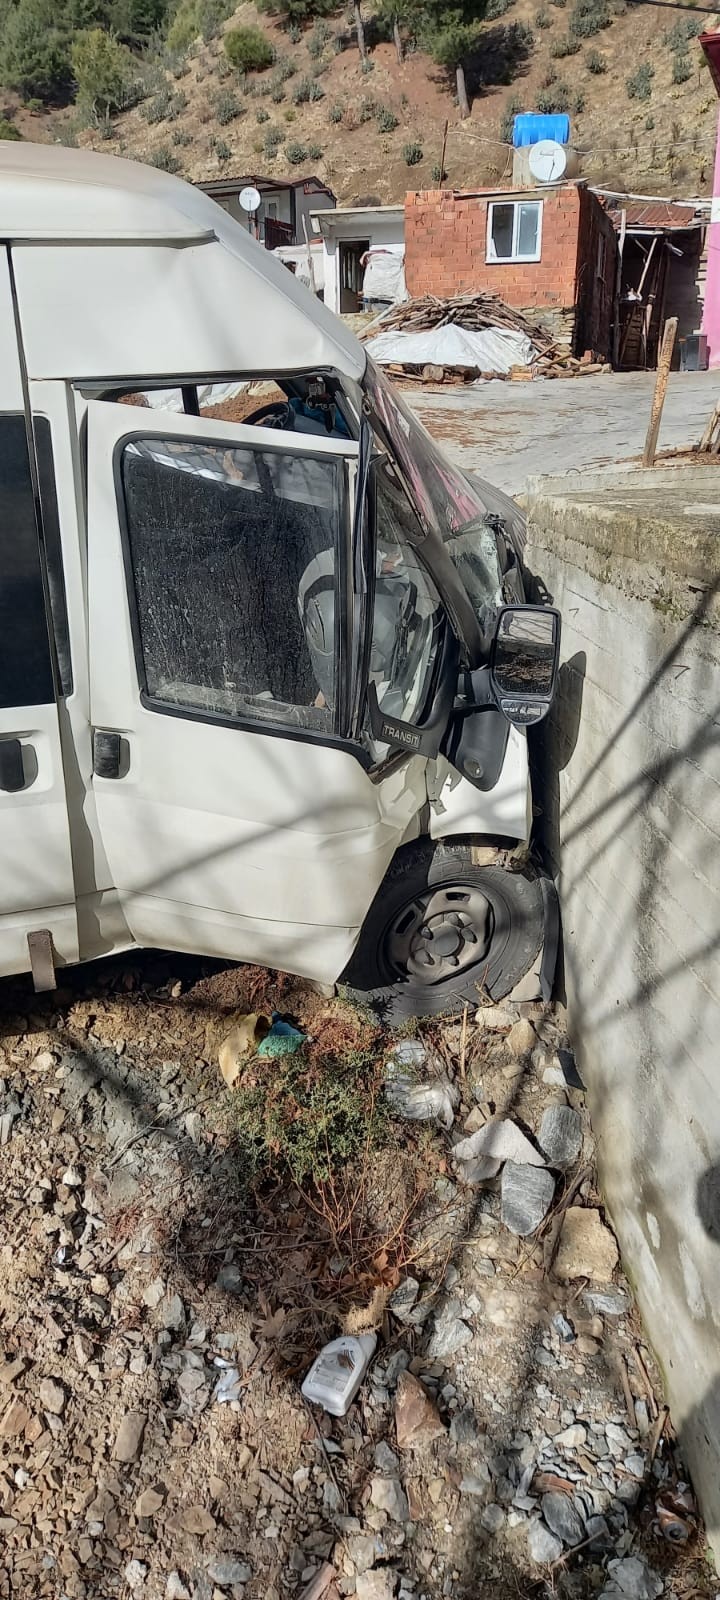 Denizli’nin Buldan ilçesinde kontrolden çıkarak cami duvarına çarpan minibüsün sürücüsü ağır yaralandı.